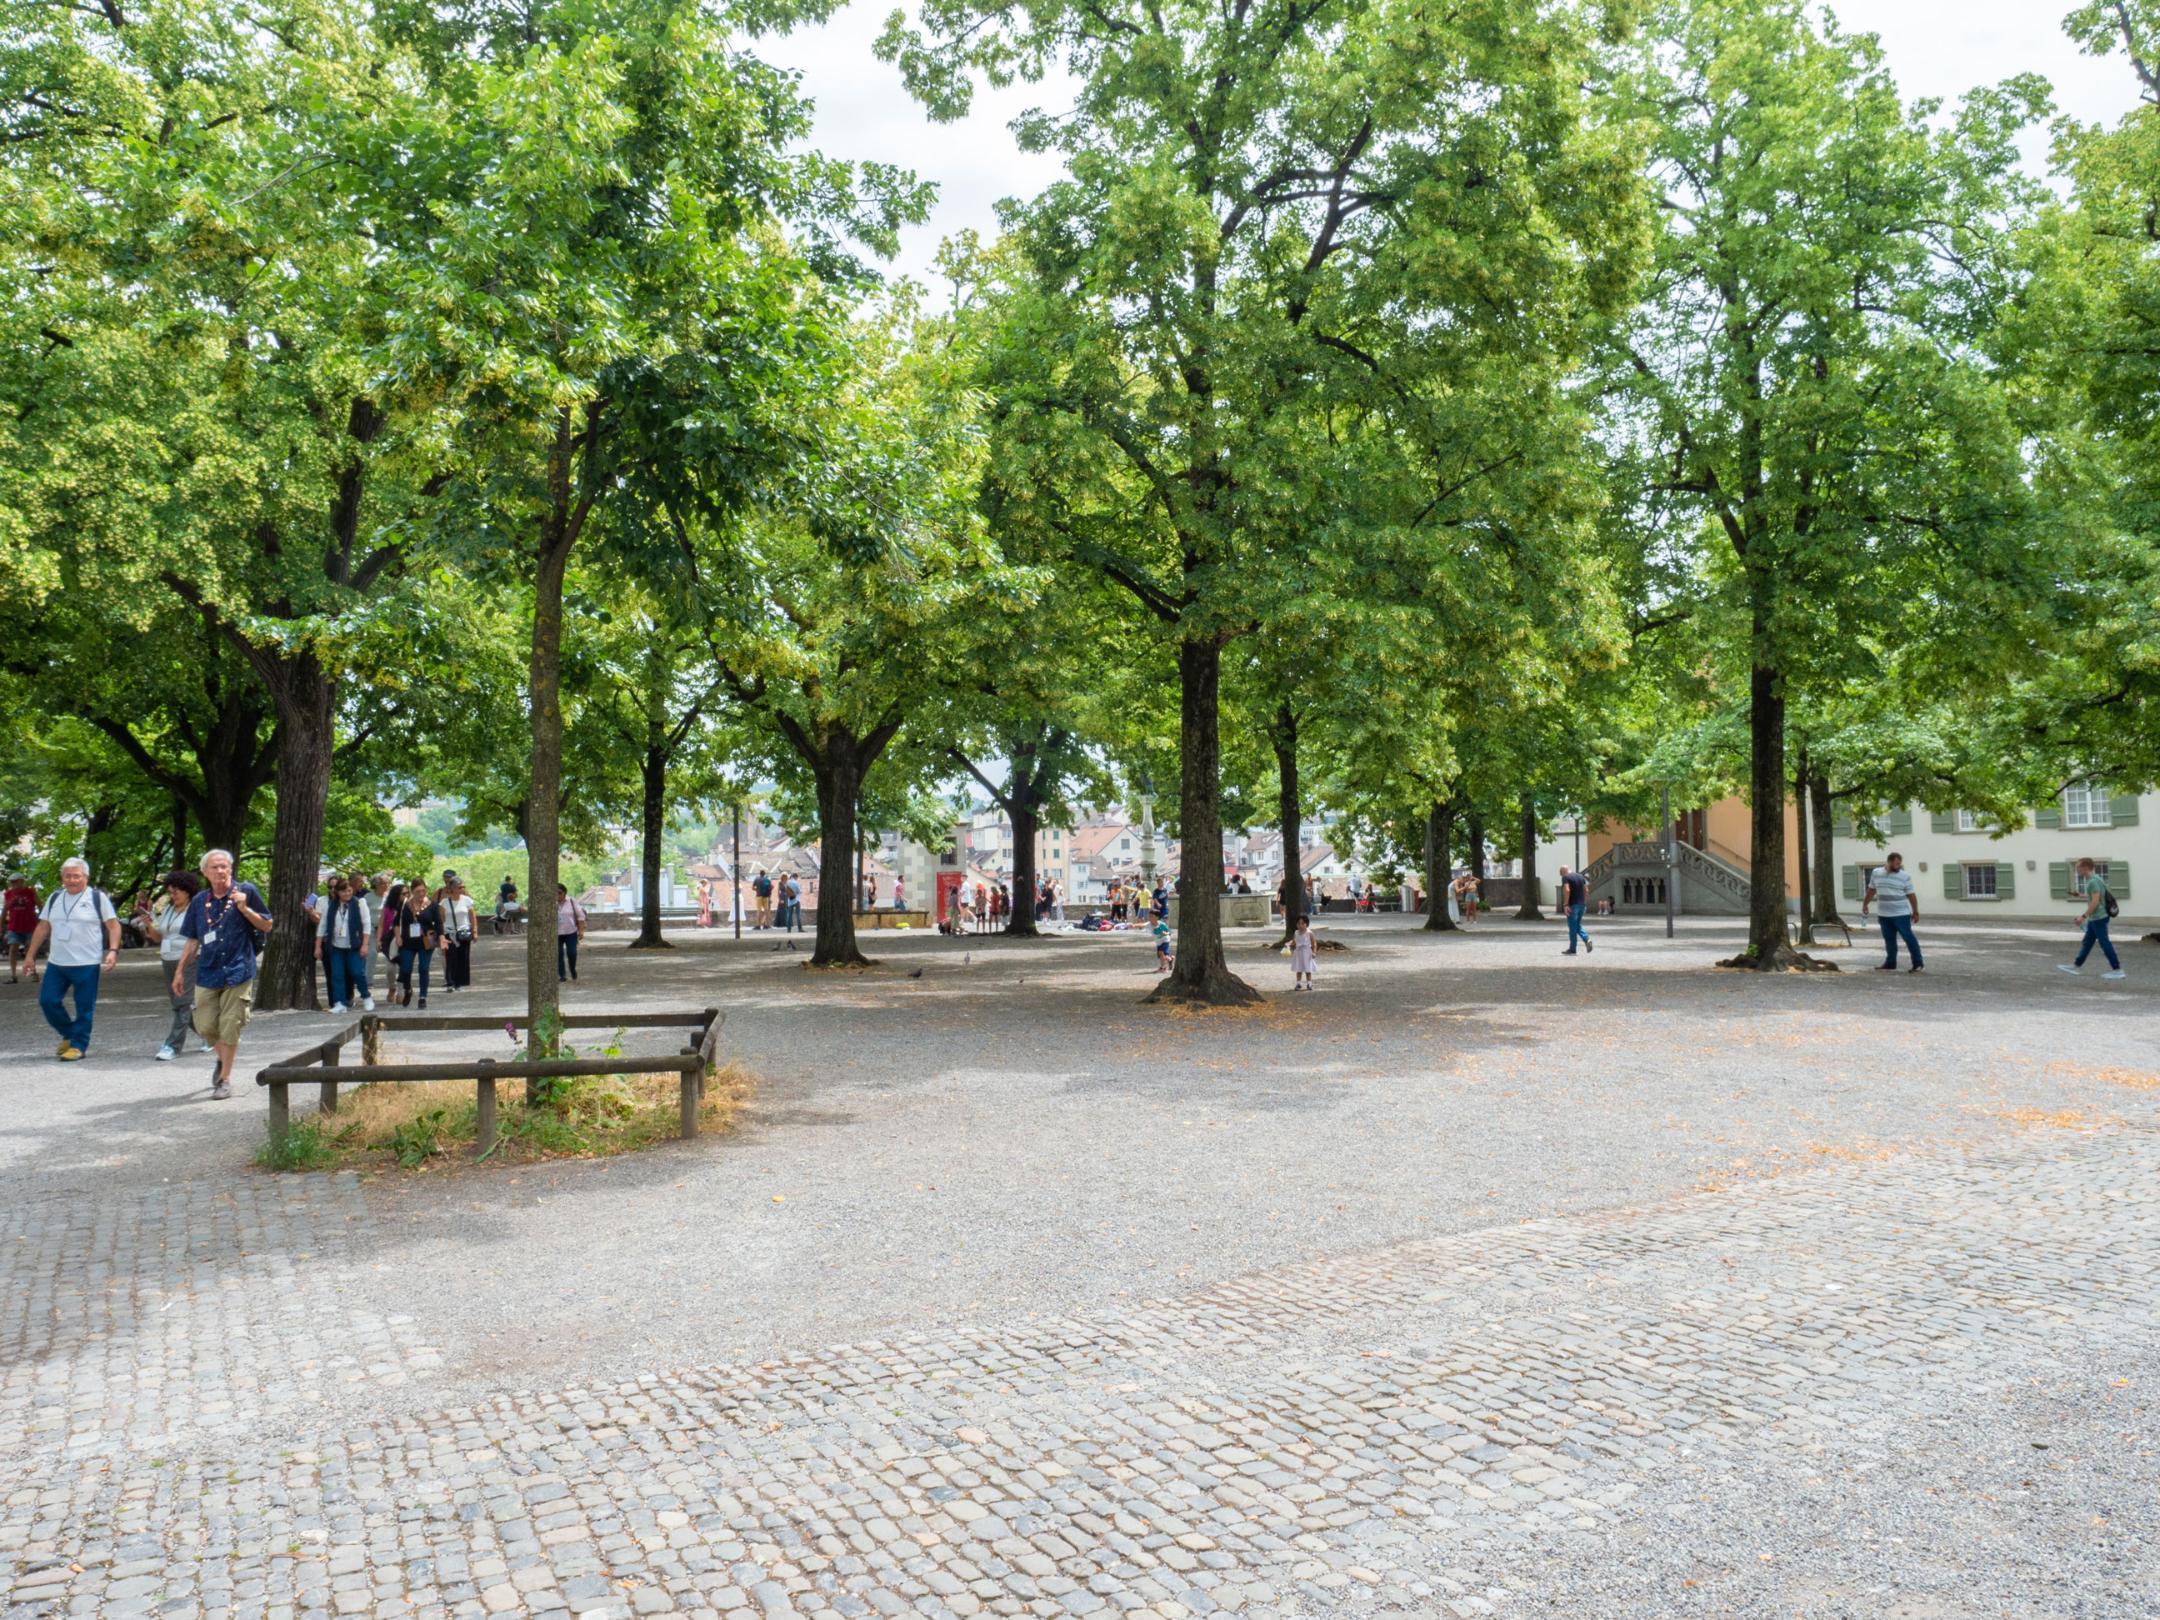 Das Bild zeigt den Lindenhof in Zürich mit grossen Bäumen und entsiegelten Flächen. Diese Fläche bestehen entweder aus Pflastersteinen oder hellem Kies.